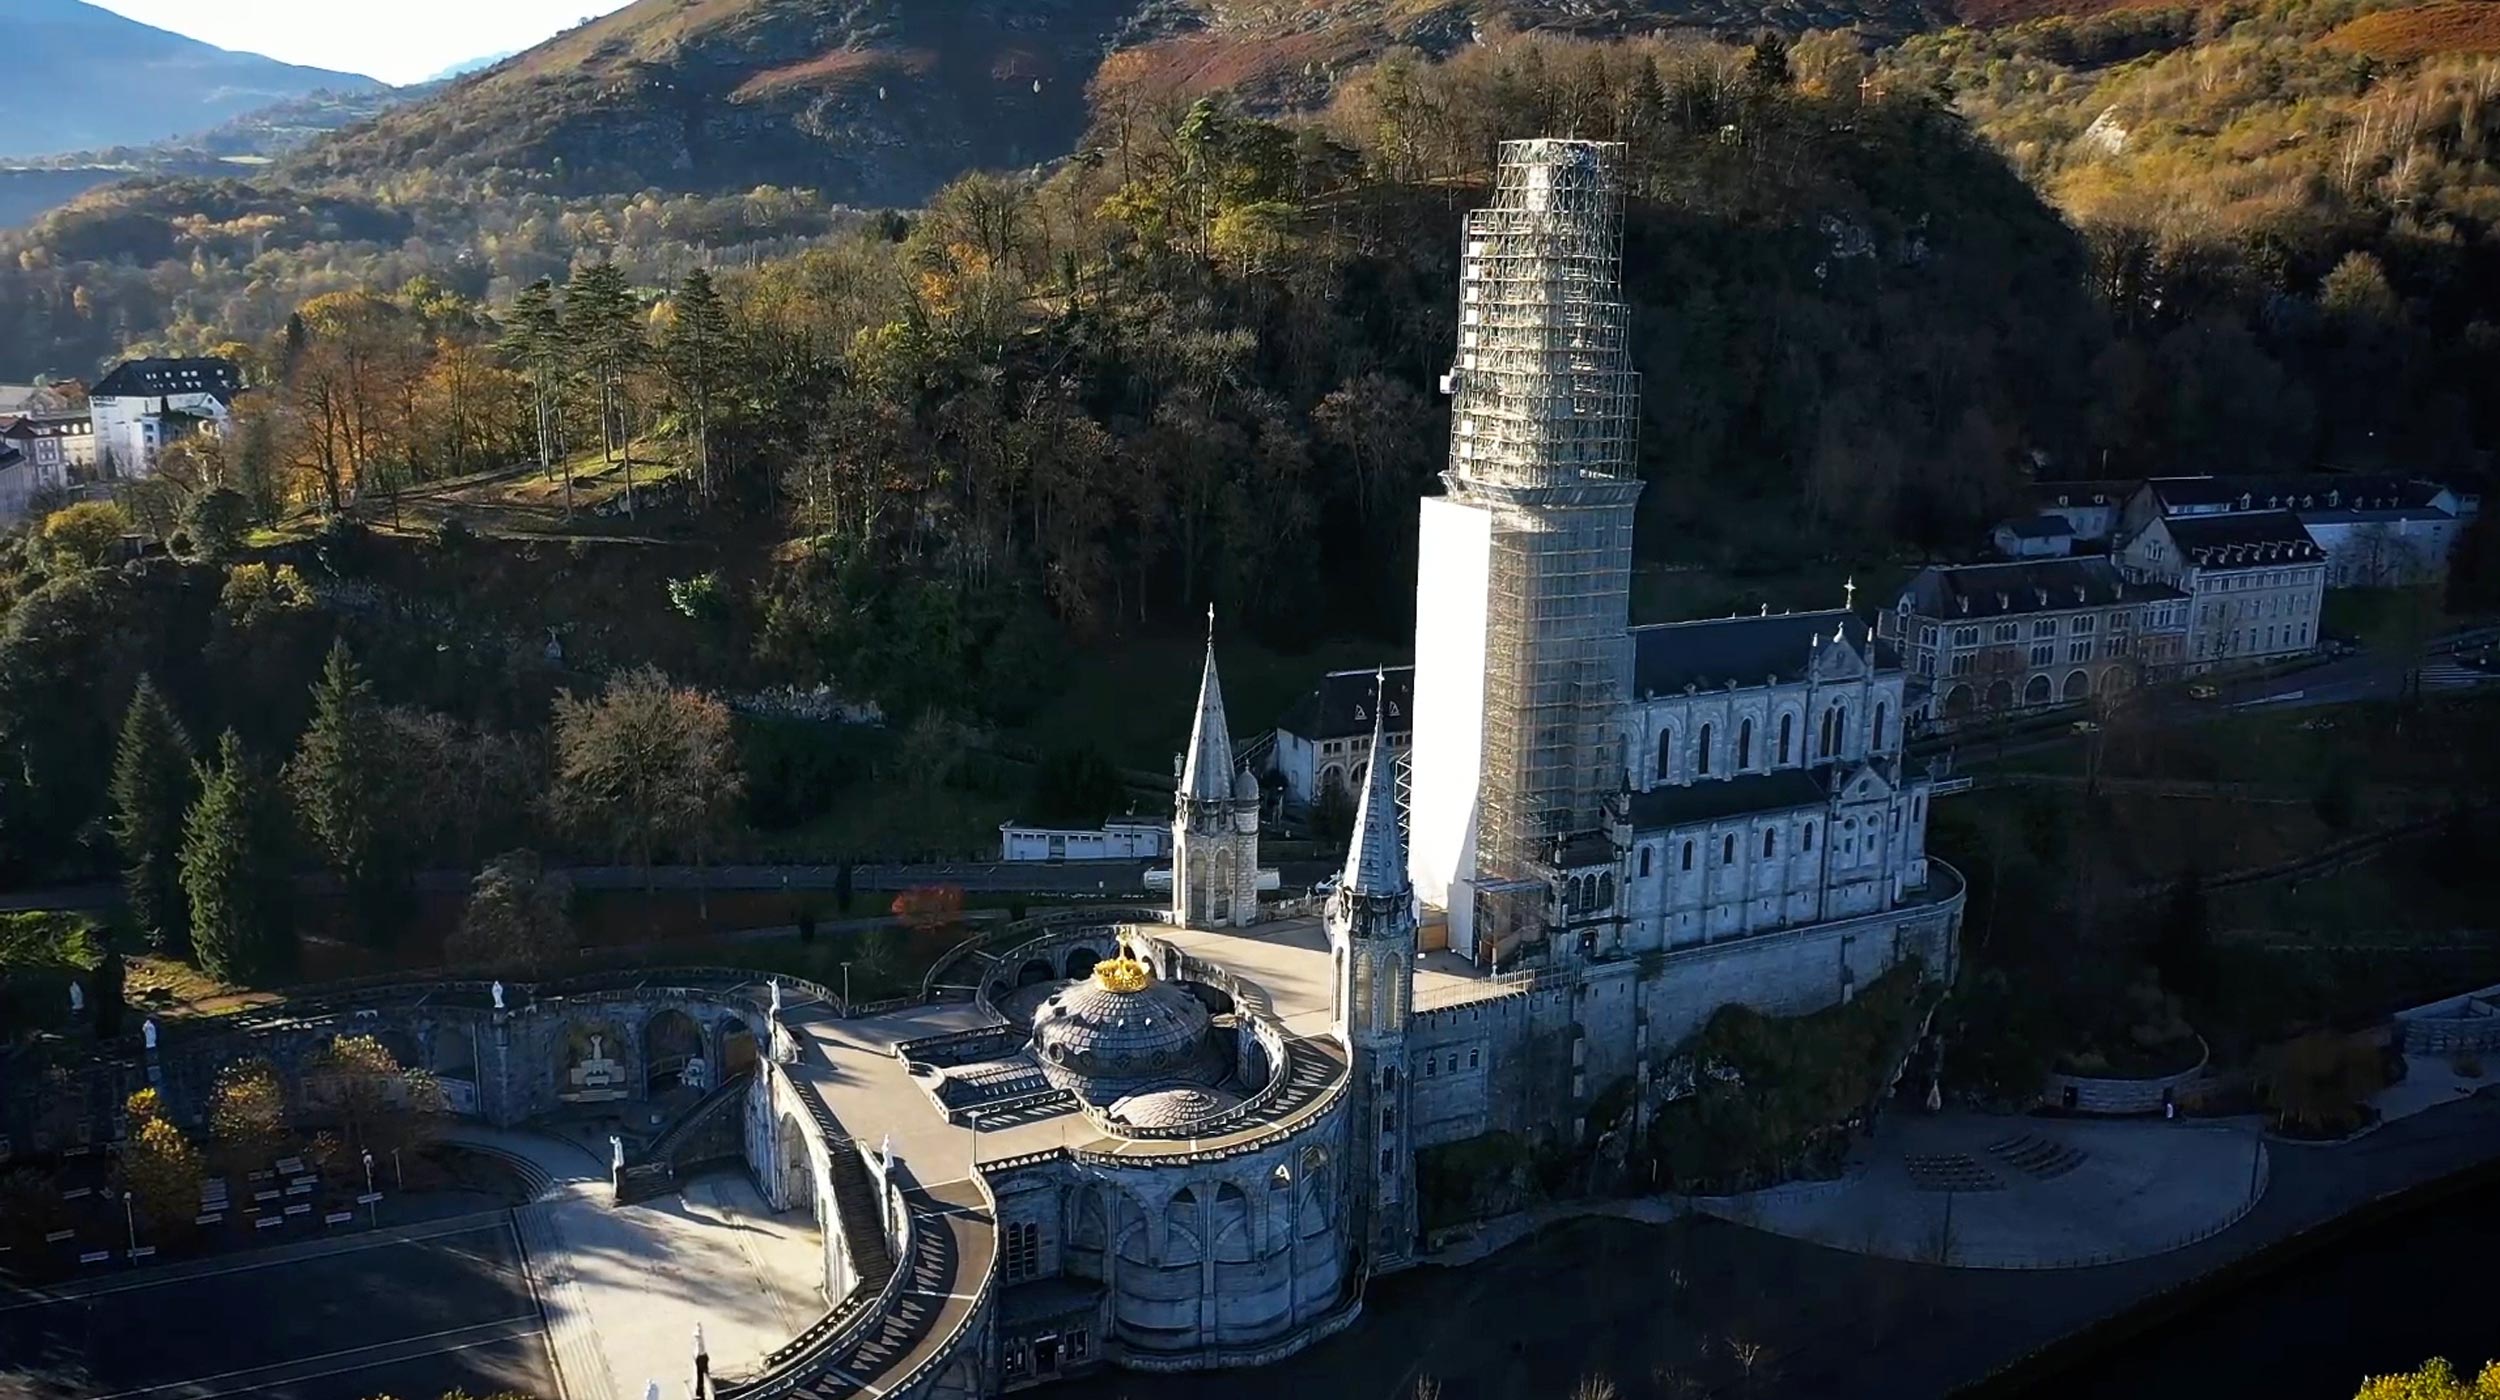 ULMA a participé à la restauration du clocher de la basilique de l'Immaculée Conception à Lourdes, en France. Des réparations ont été effectuées sur les pierres usées, le remplacement des supports du clocher, la réparation des colonnes, etc.